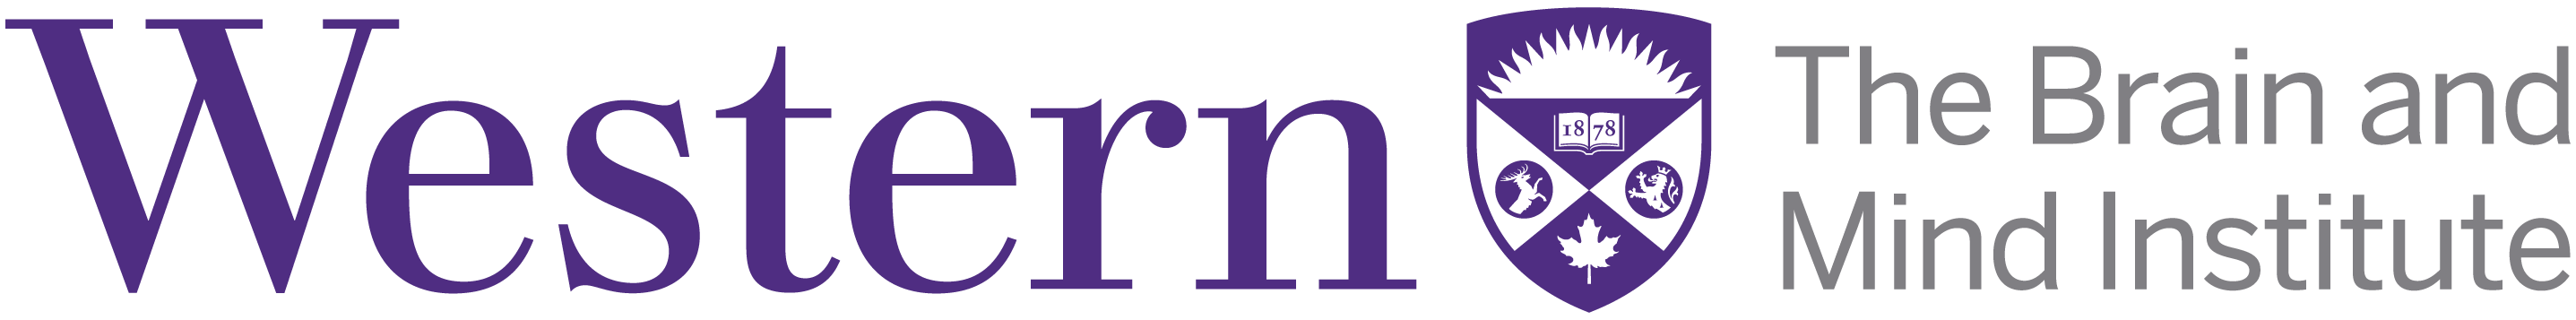 Brain and mind institute logo